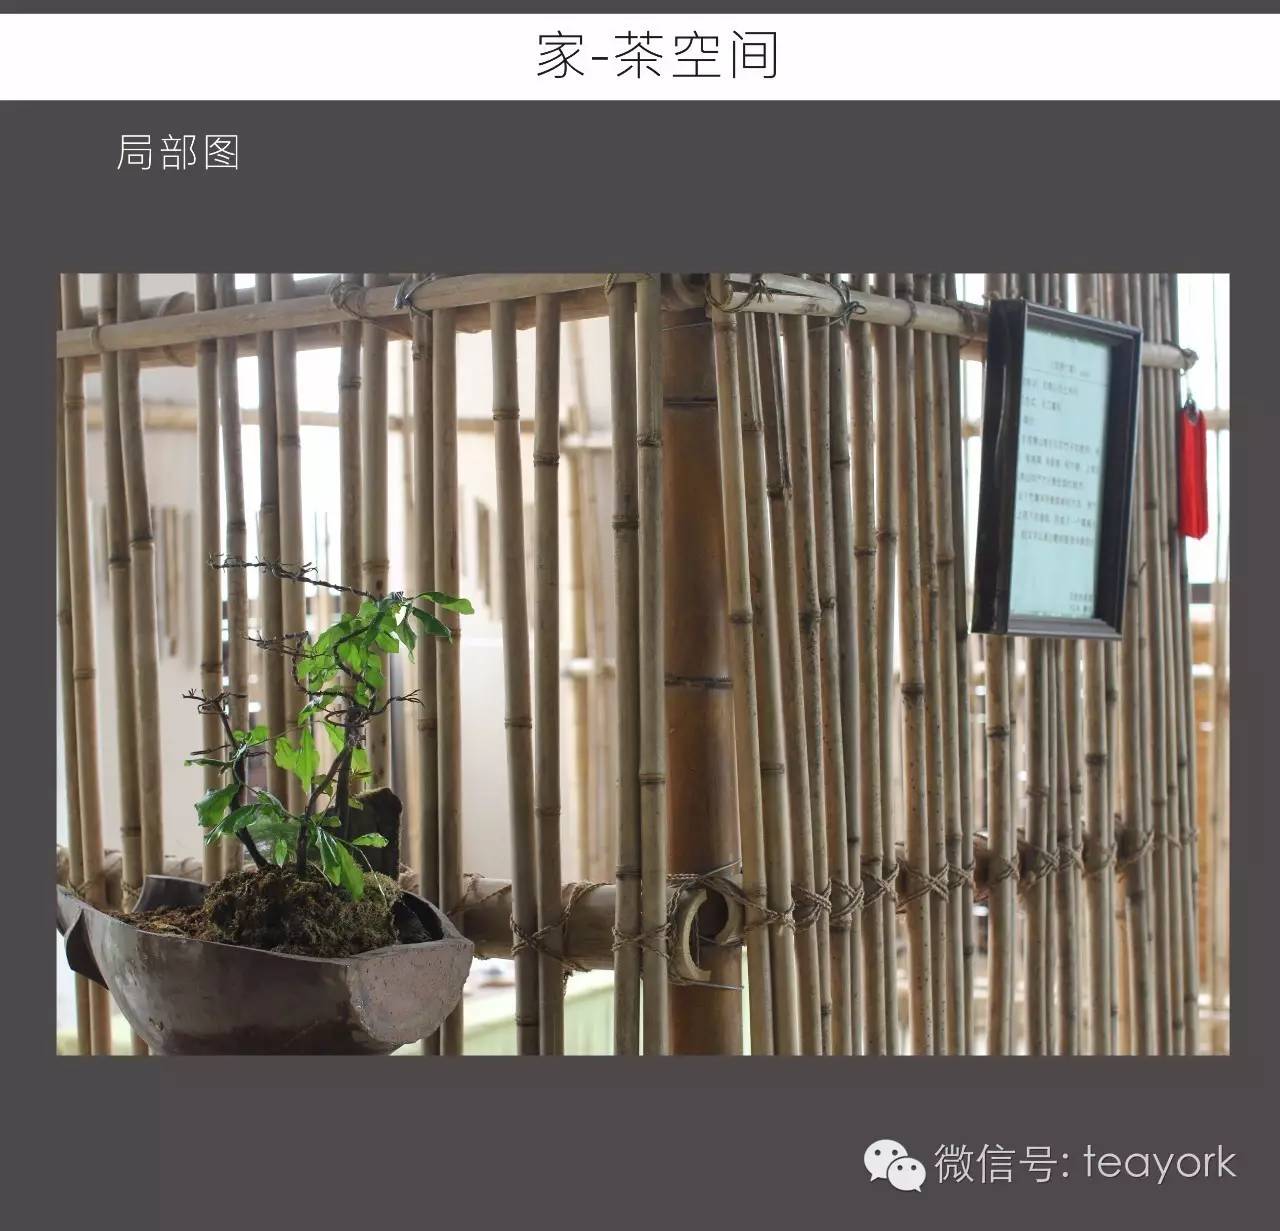 重庆东方美学茶空间设计大赛开始啦